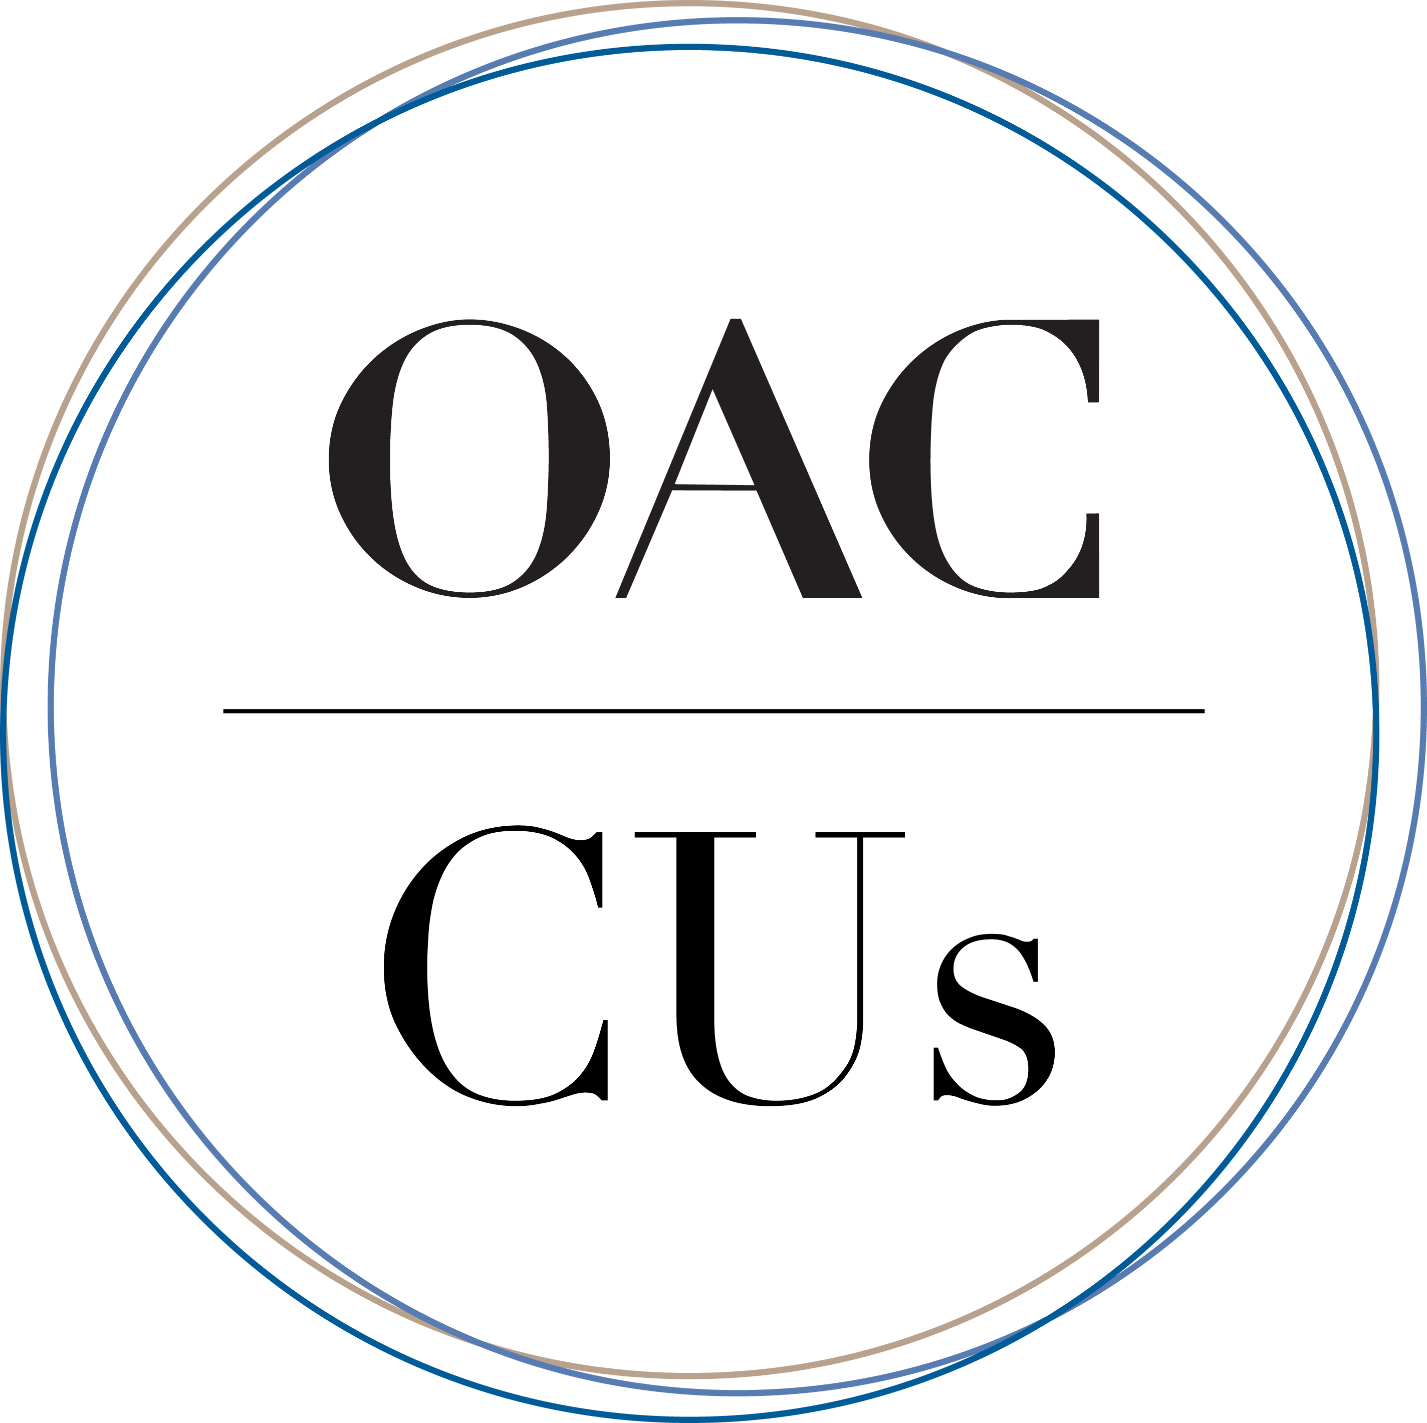 OACCUs logo